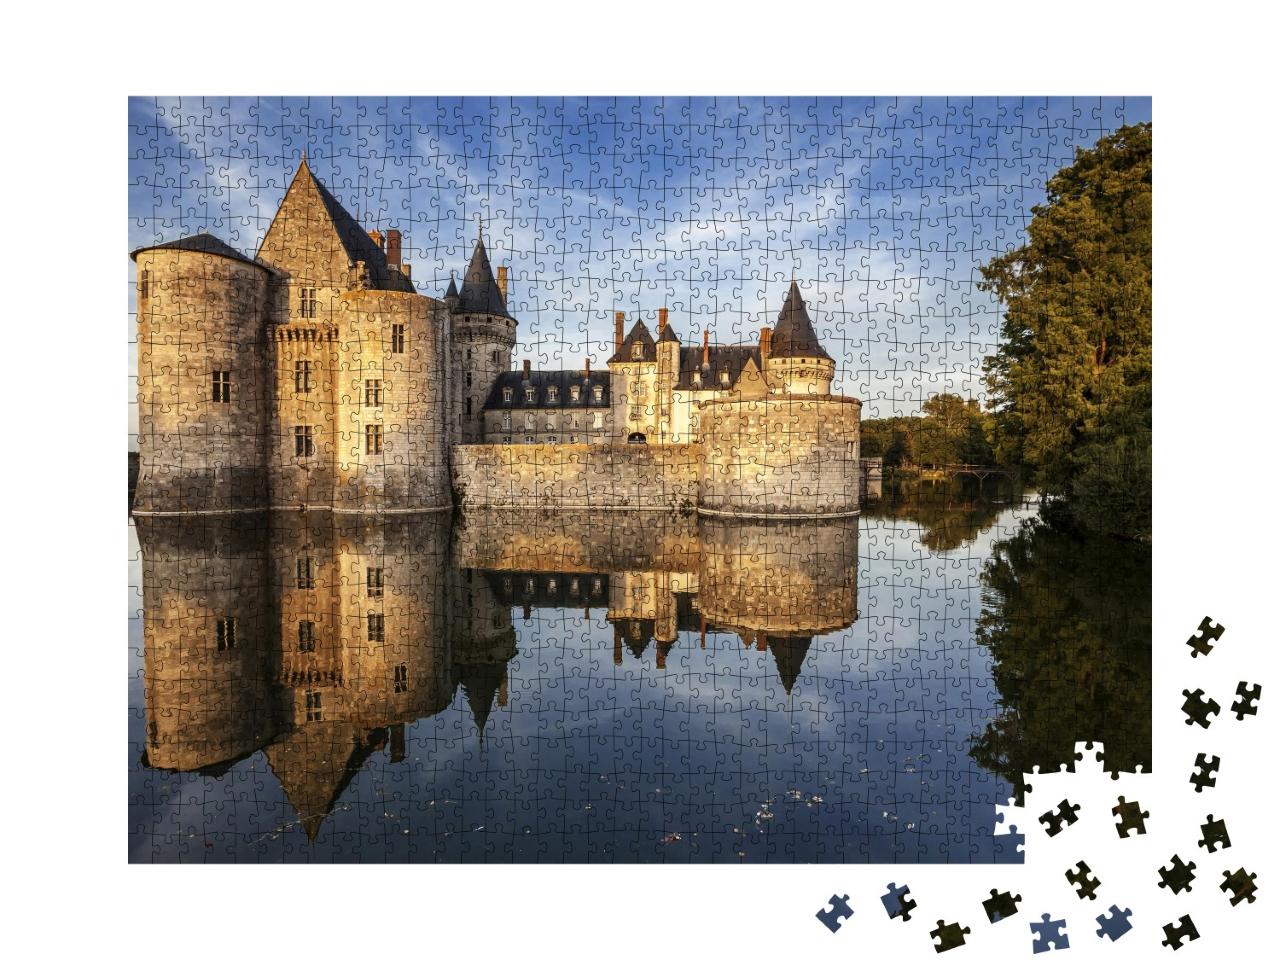 Puzzle de 1000 pièces « Sully-sur-loire, France : château dans la vallée de la Loire »